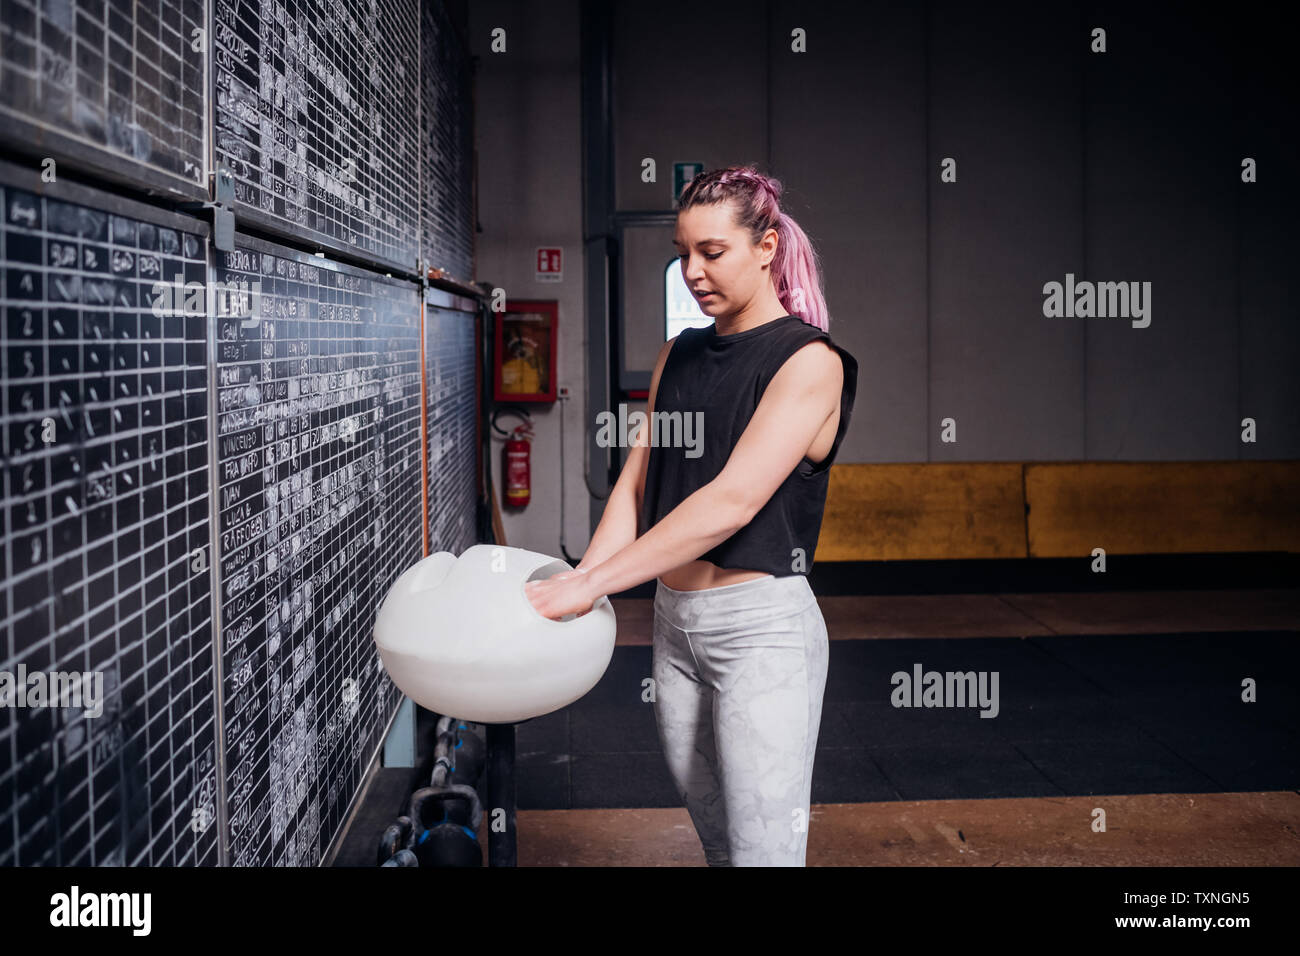 Junge Frau pudern Palmen in der Turnhalle Stockfoto